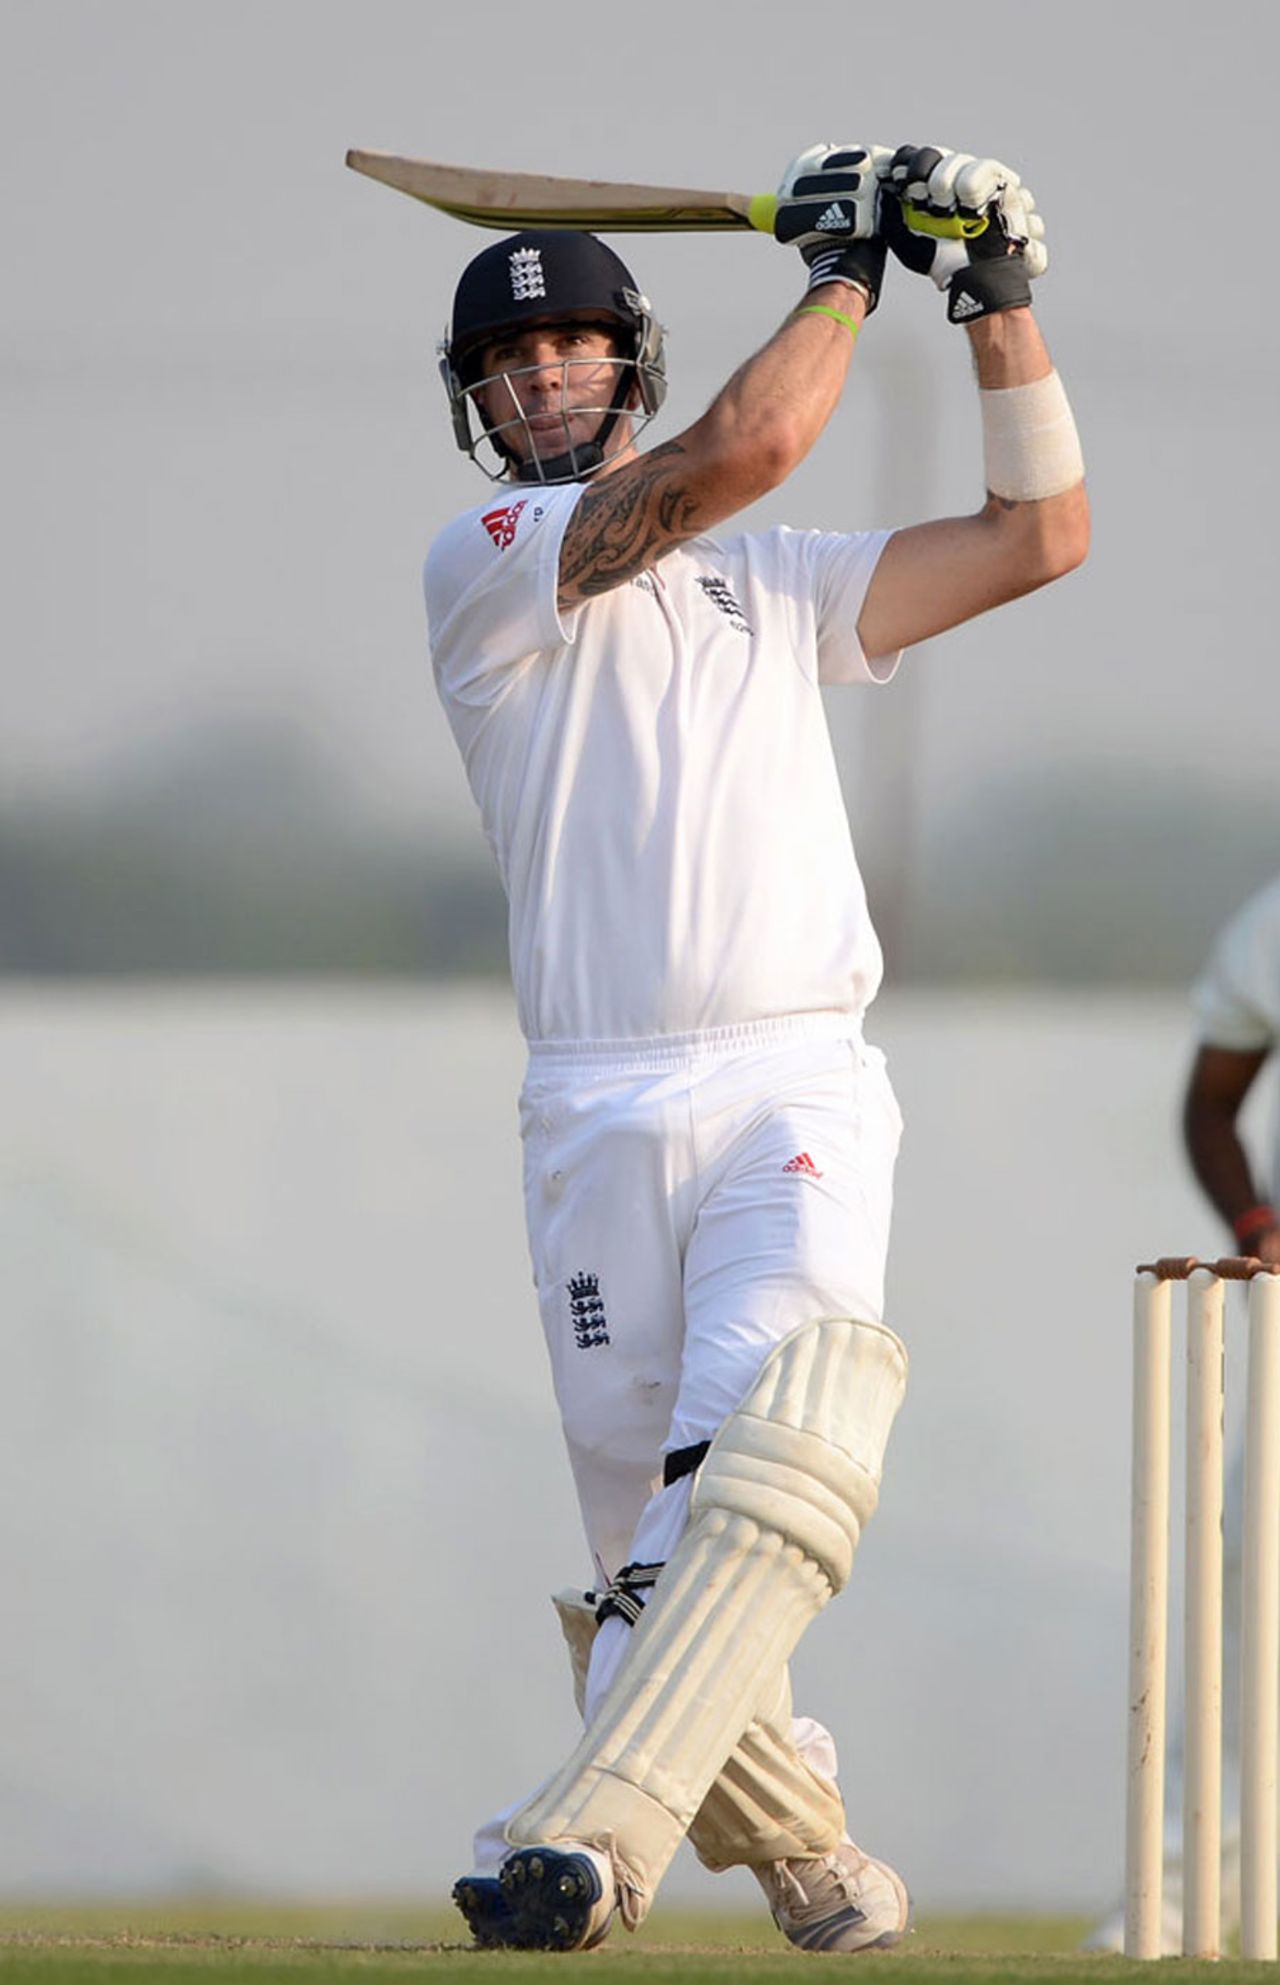 Kevin Pietersen blazed an 86-ball century, Haryana v England XI, 1st day, Ahmedabad, November 8, 2012